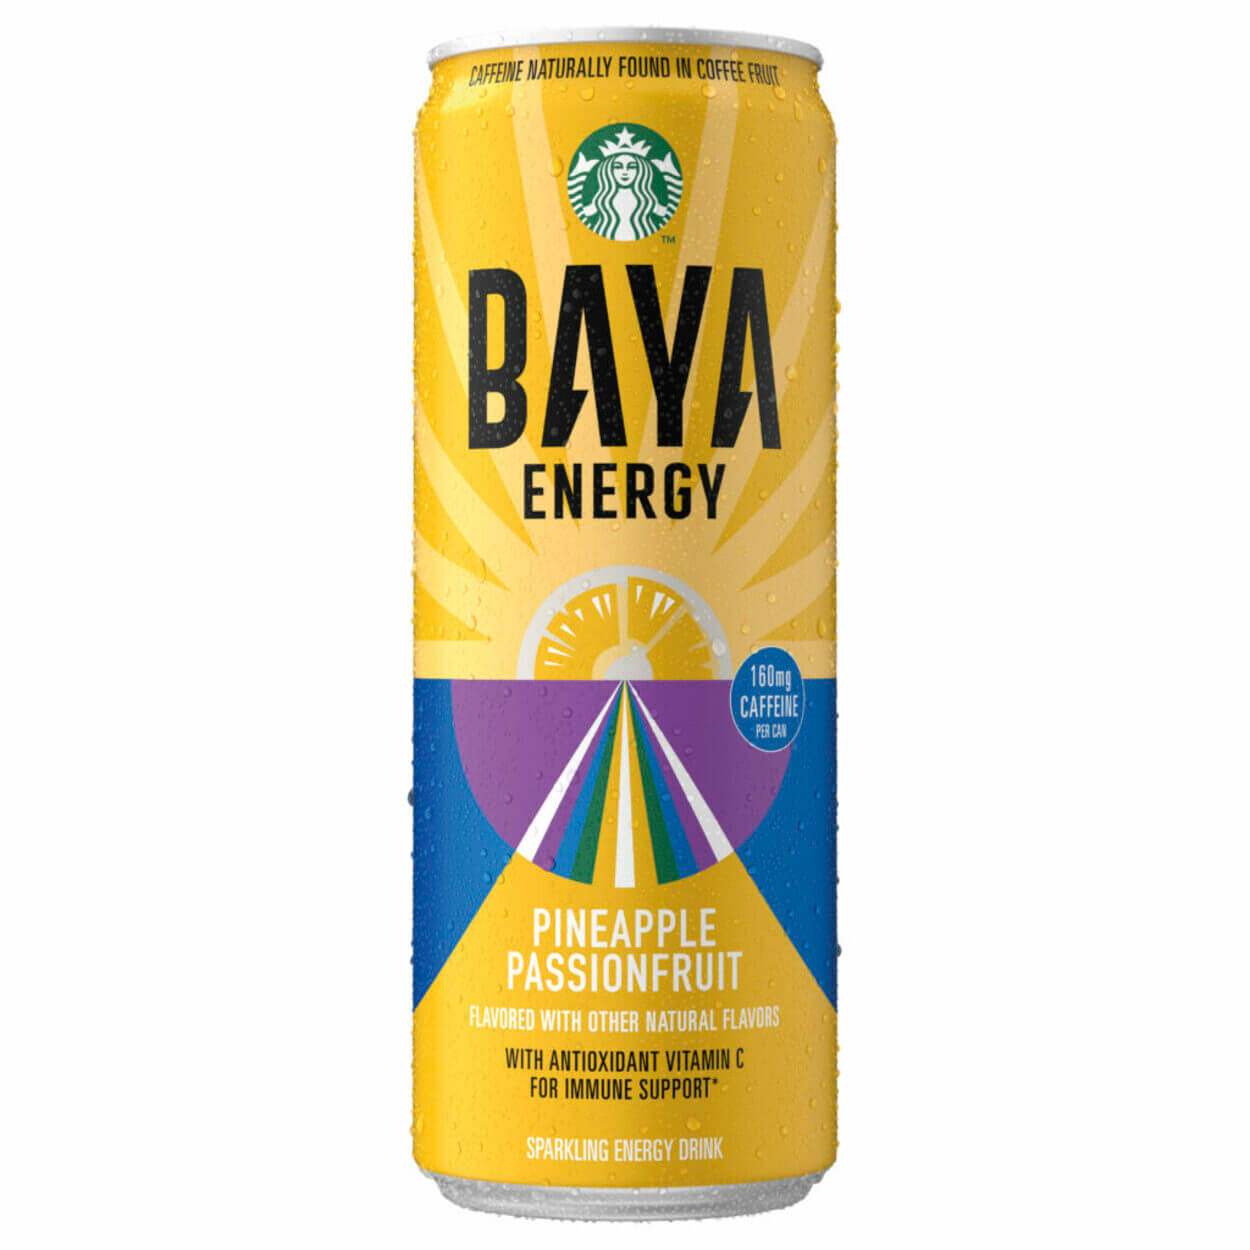 Image of Baya Energy drink.